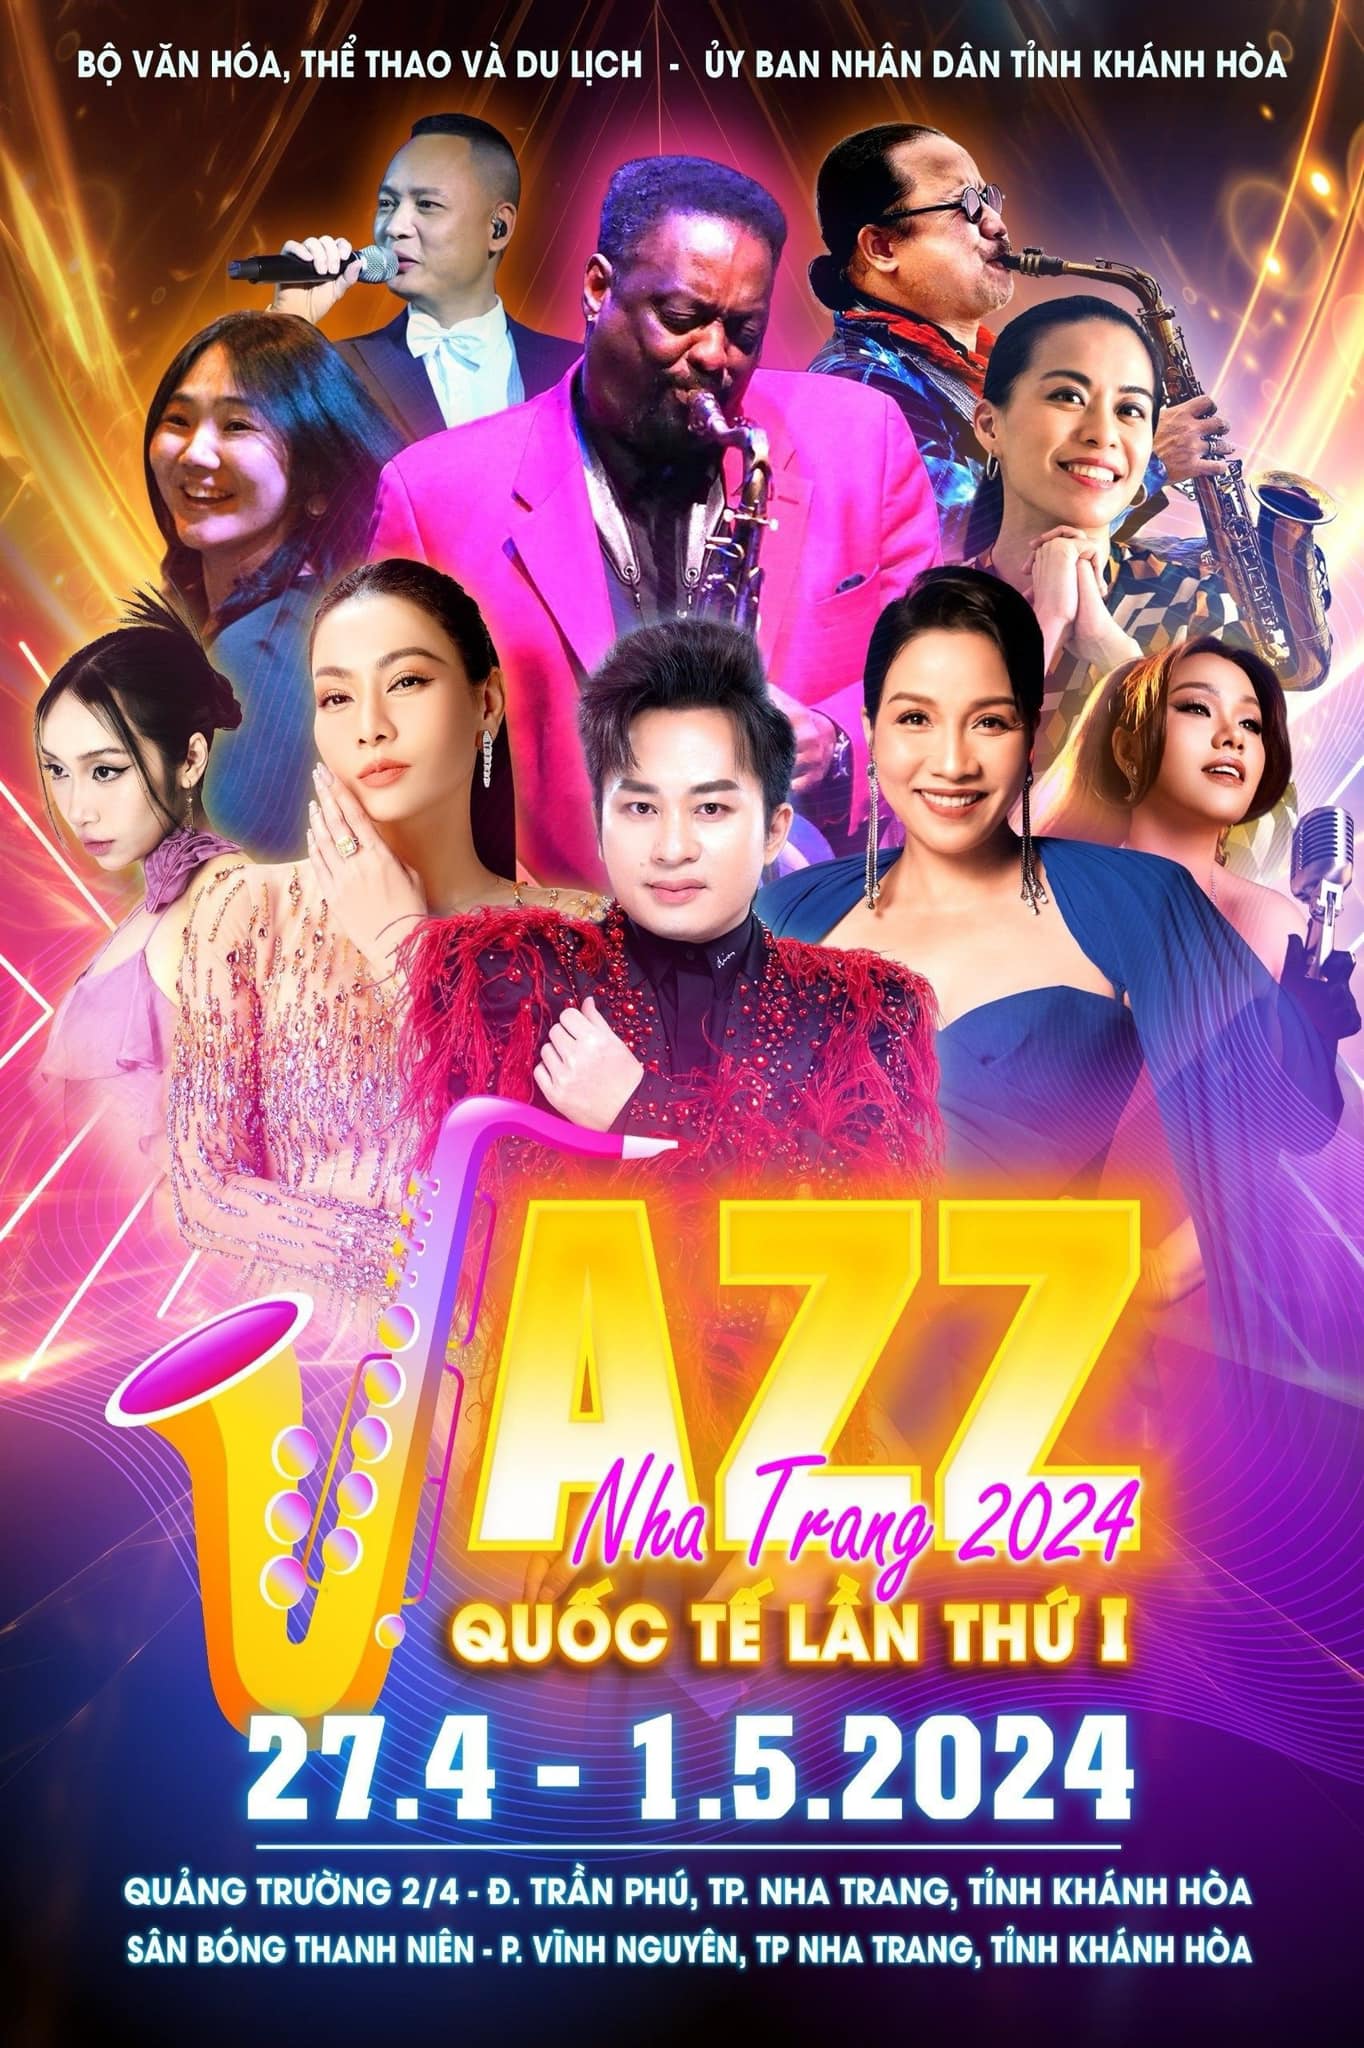 Liên hoan quốc tế nhạc Jazz lần thứ I- Nha Trang 2024: Ca sĩ Tùng Dương mang phong vị Á đông vào Jazz - Ảnh 1.